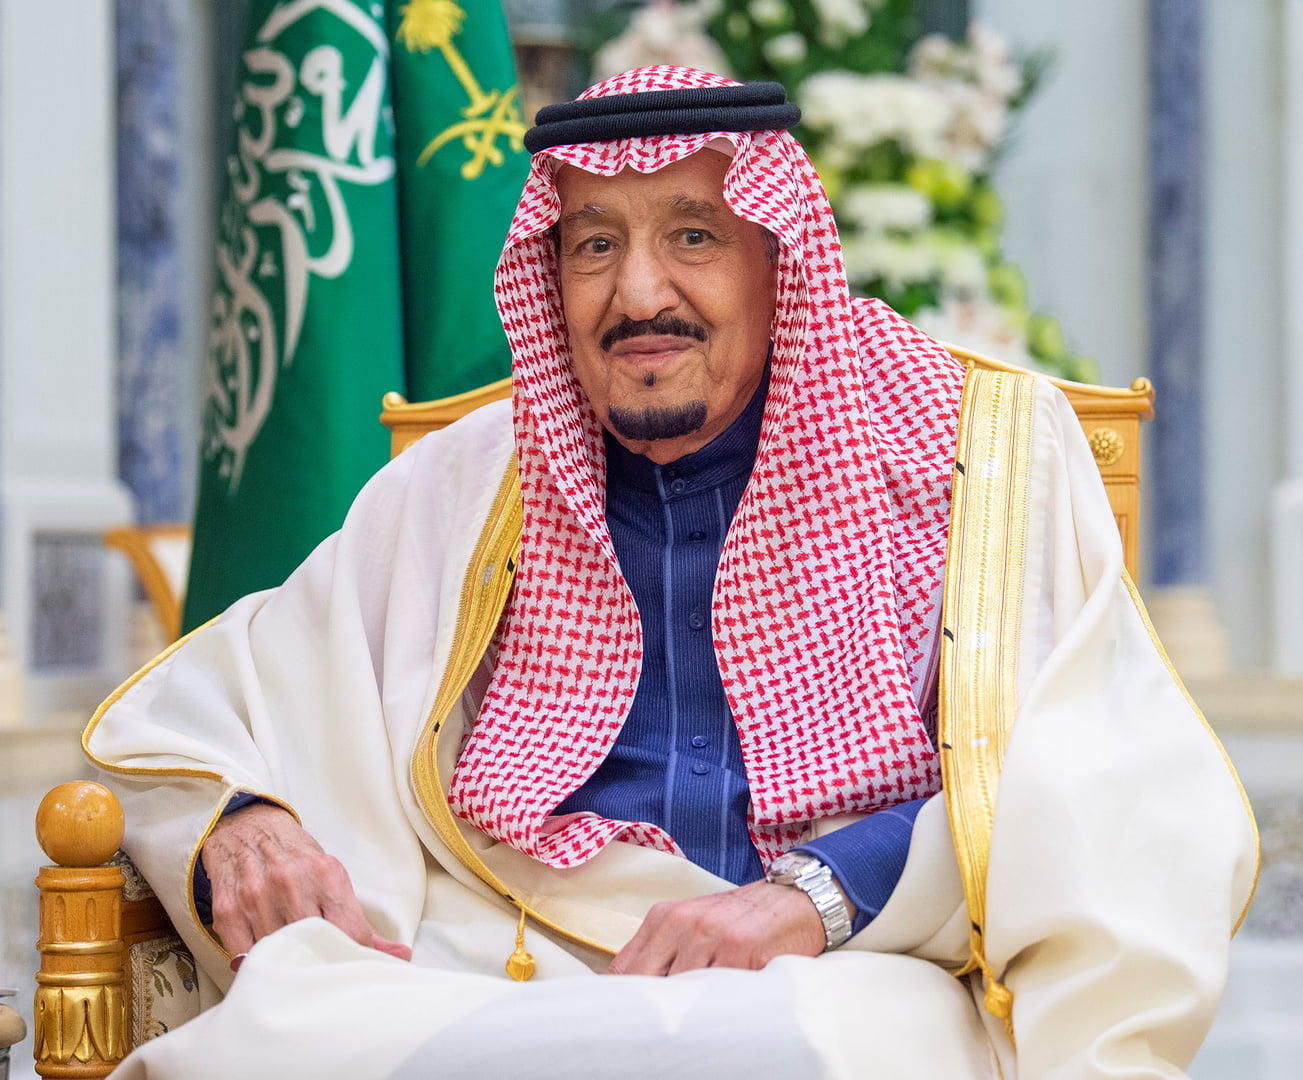 تفاصيل الحالة الصحية للملك سلمان بن عبدالعزيز